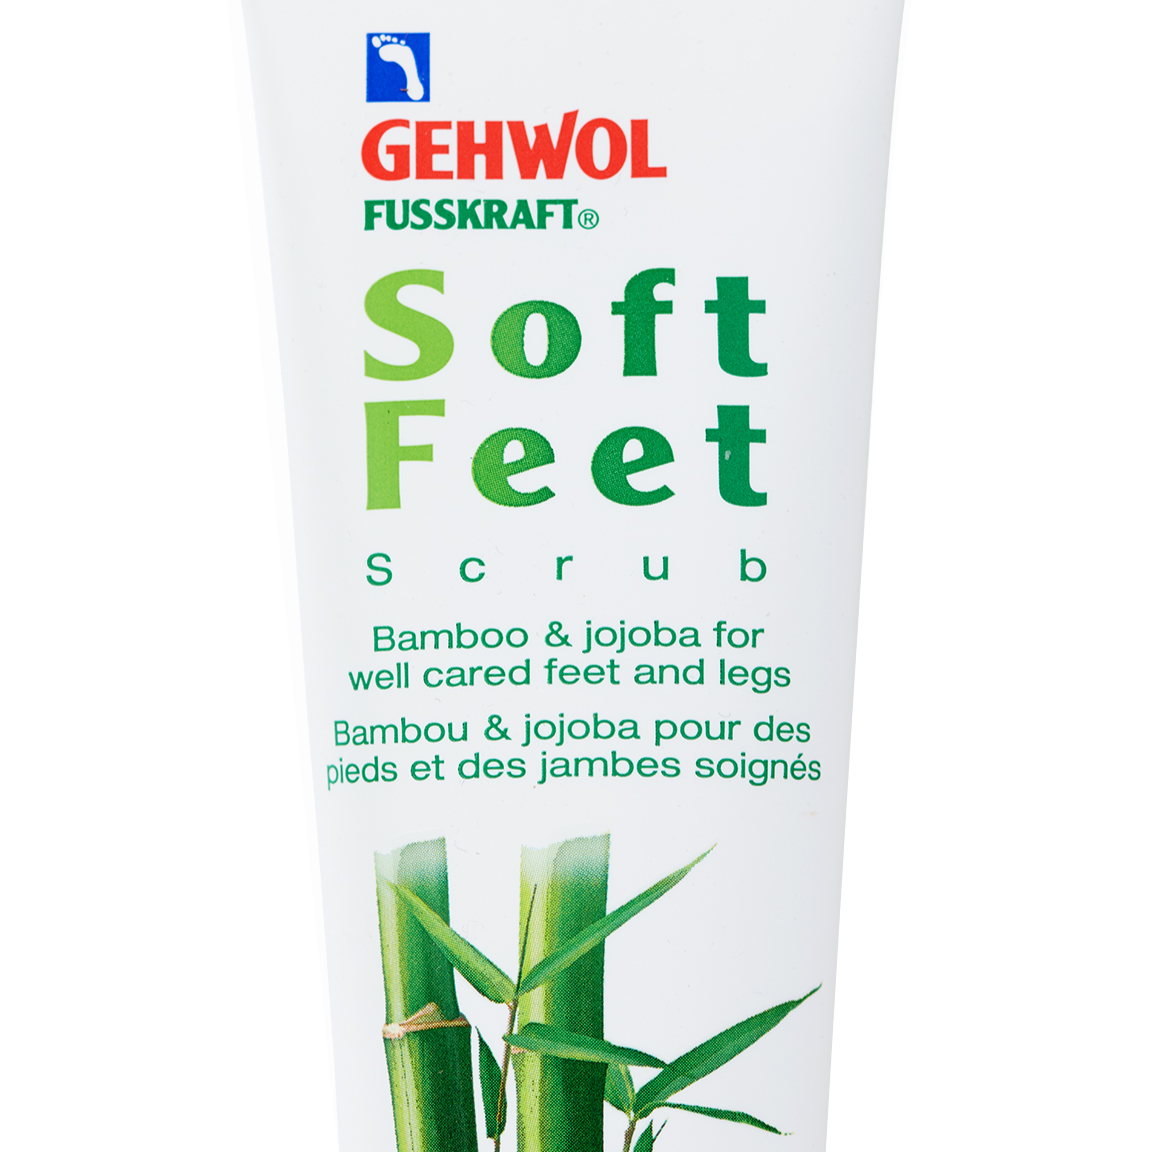 Gehwol Soft Feet Scrub